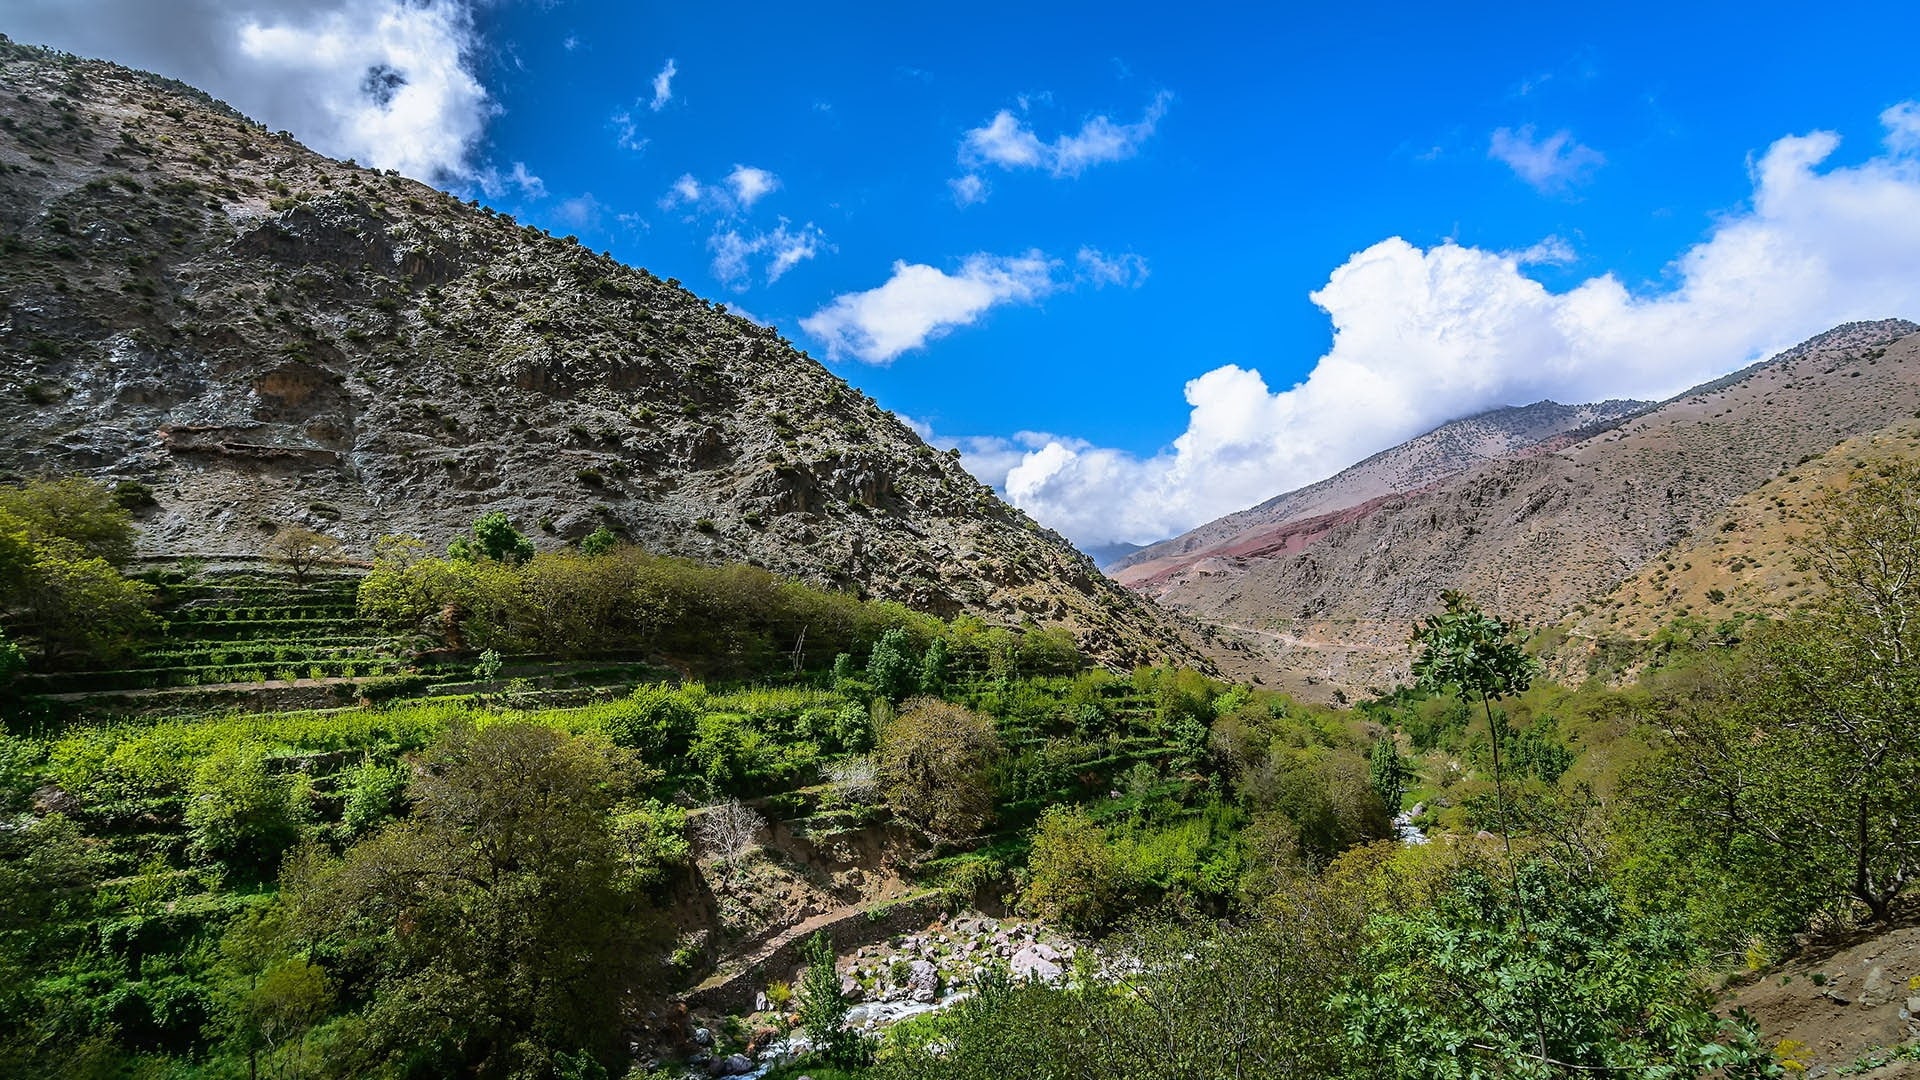 pathfinders treks - 2 day trek azzaden valley